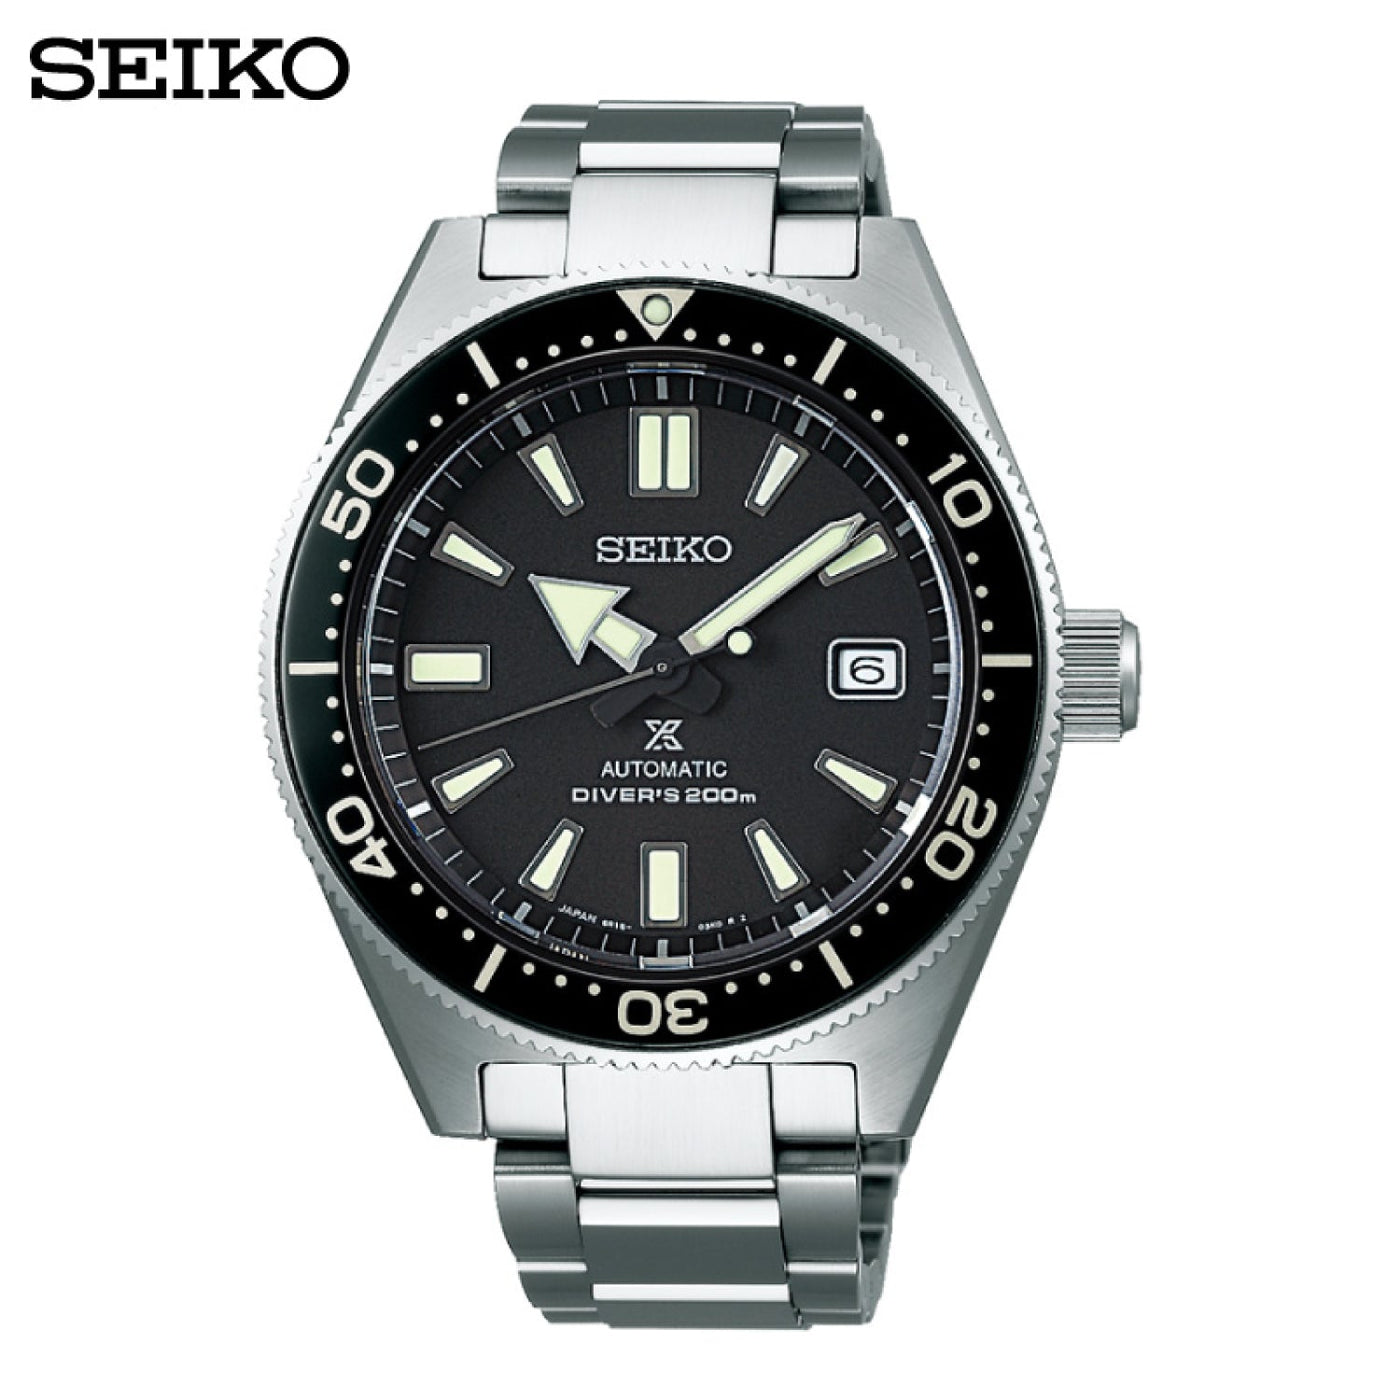 Seiko (ไซโก) นาฬิกาดำน้ำ รุ่น Prospex Automatic Diver's SPB051J ระบบอัตโนมัติ ขนาดตัวเรือน 42.6 มม.